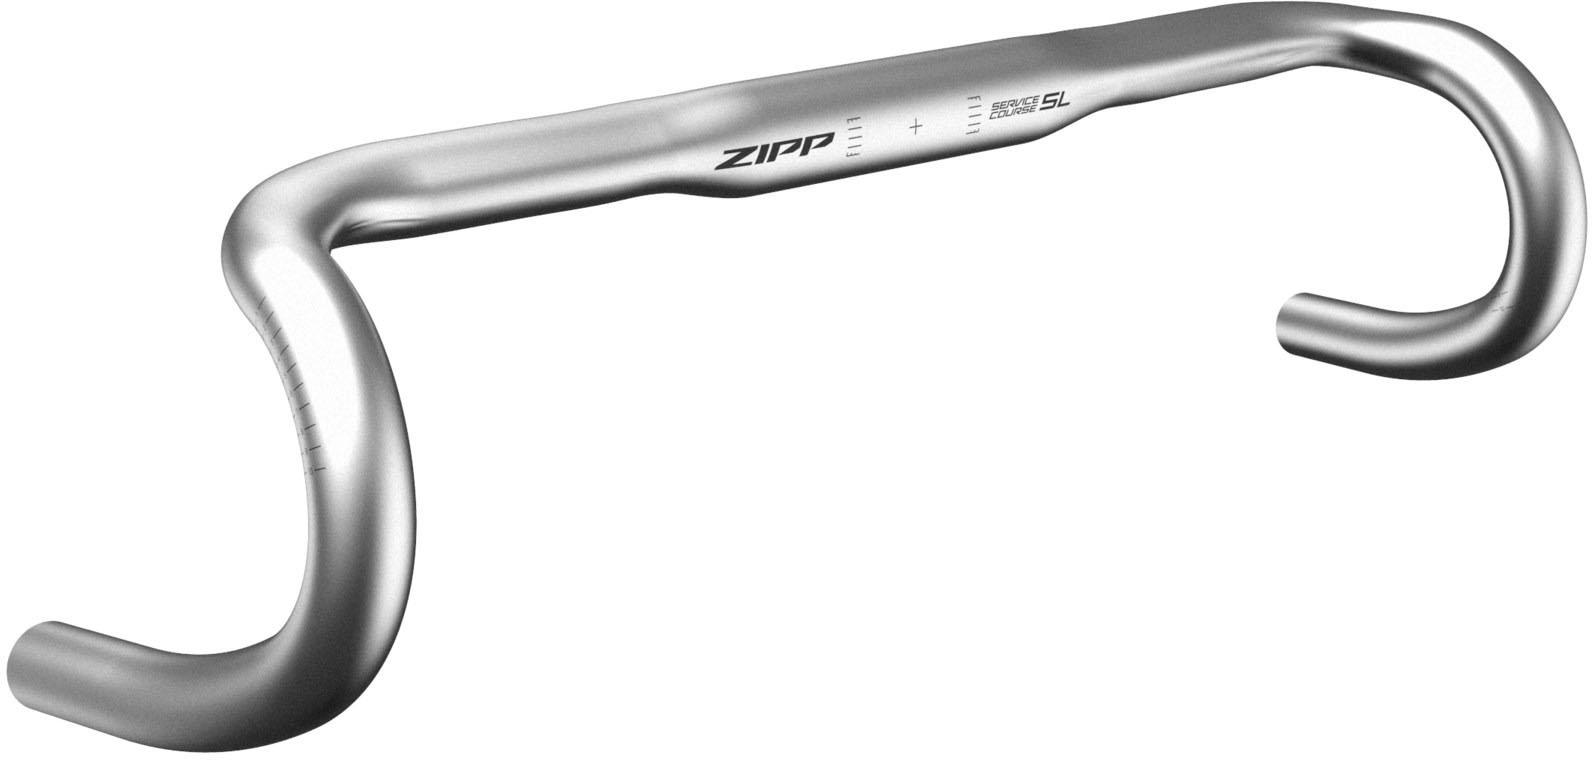 Zipp Service Course 70 Xplr Handlebar 2020  Silver